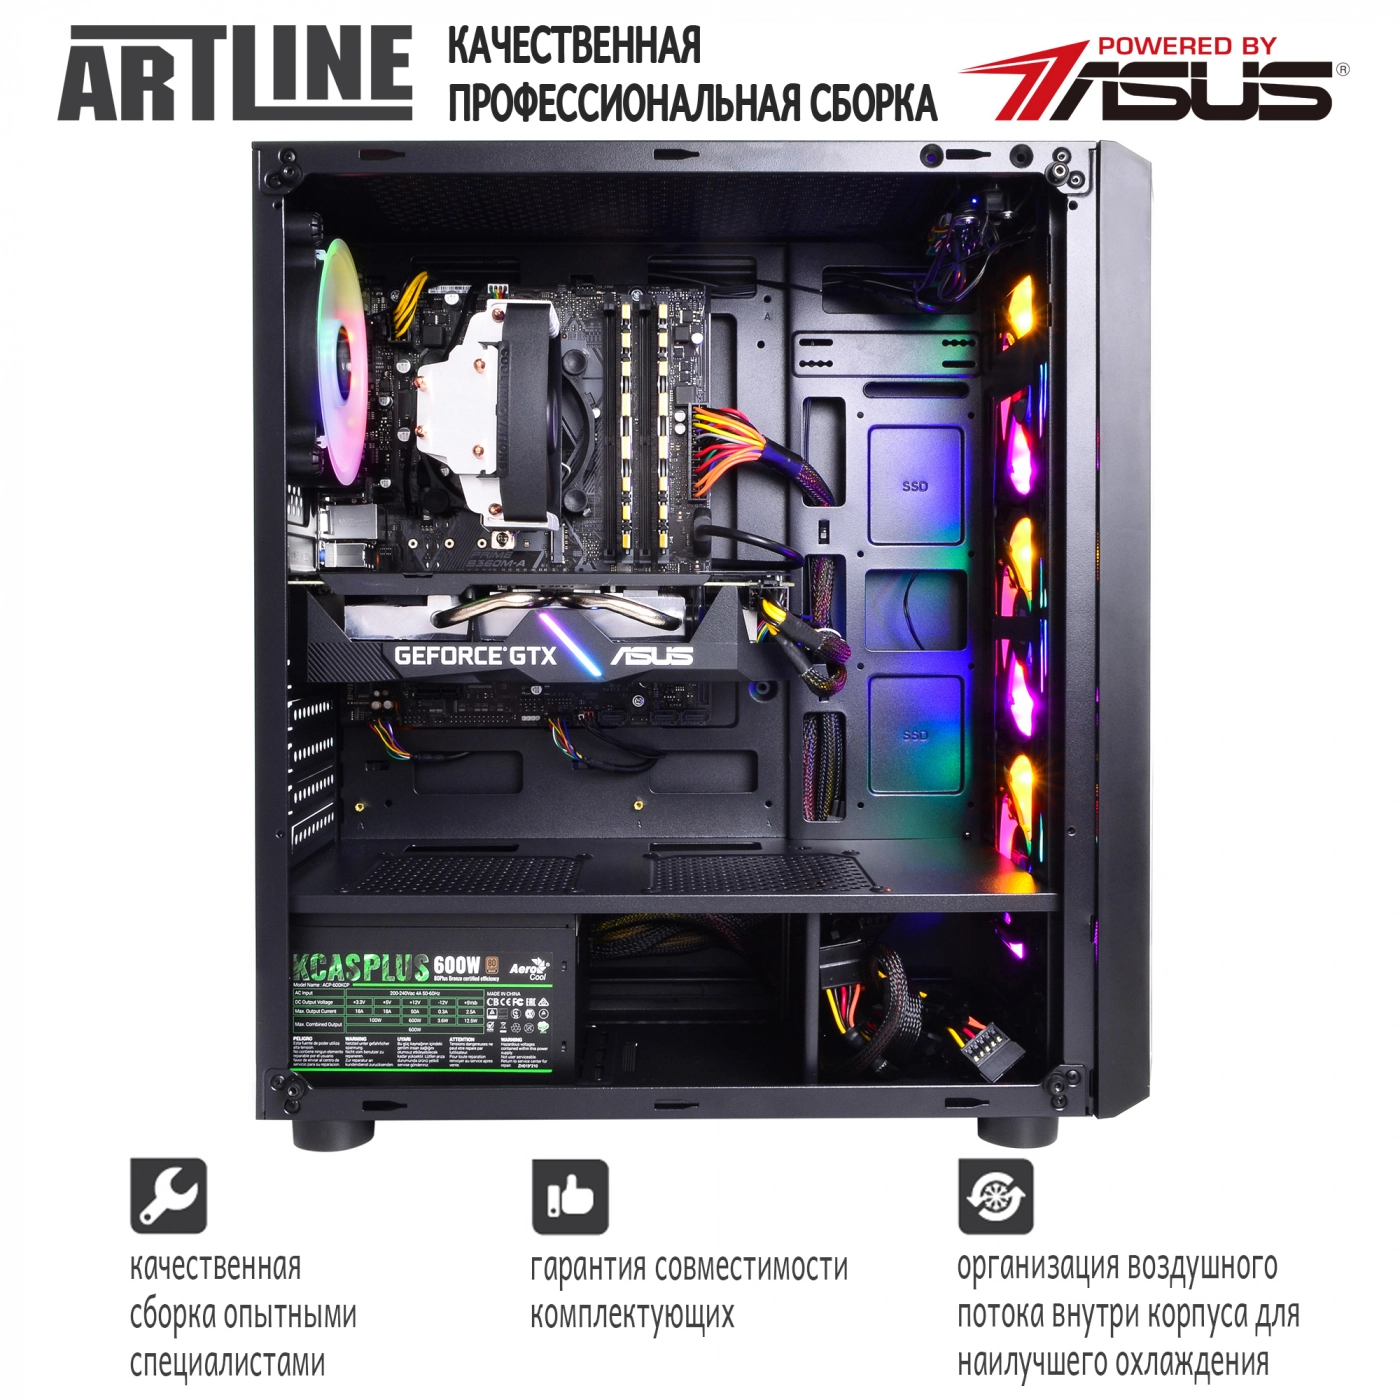 Купить Компьютер ARTLINE Gaming X39v41 - фото 9